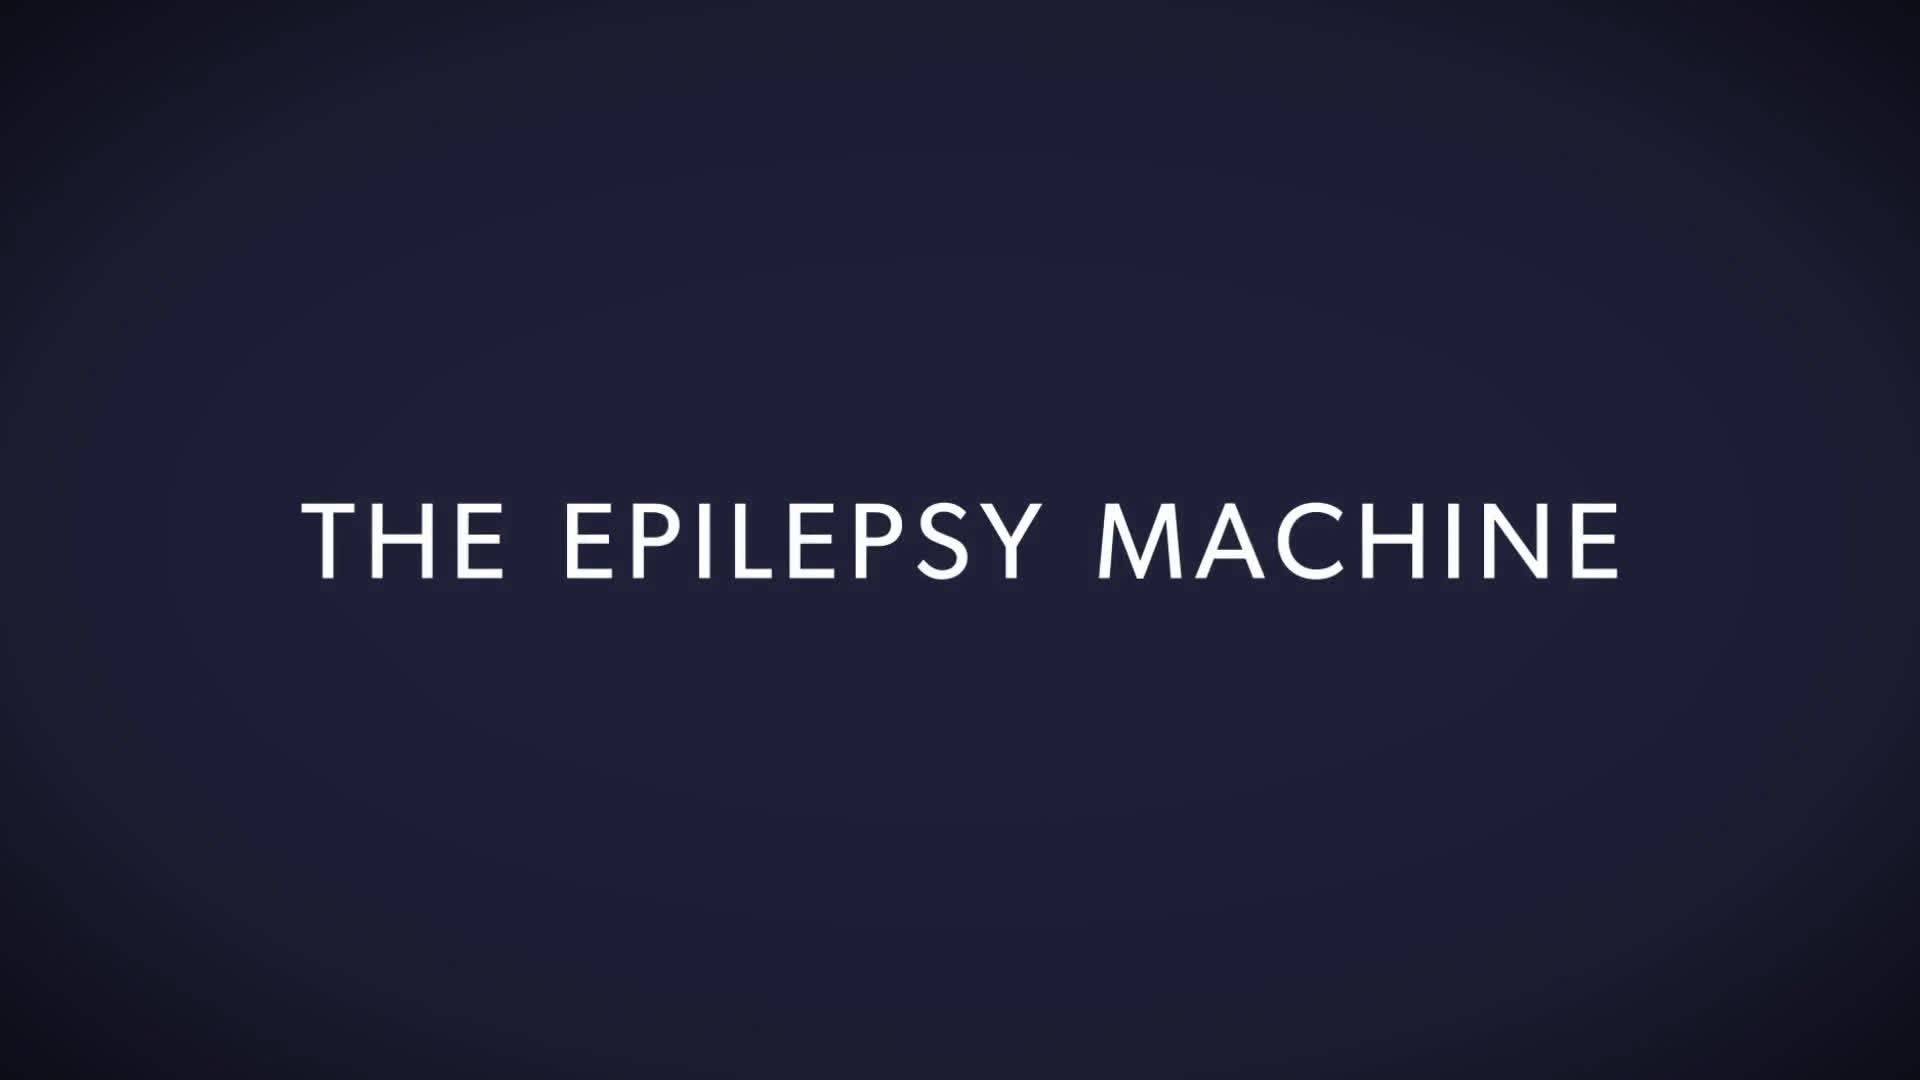 UCB "THE EPILESPSY MACHINE"